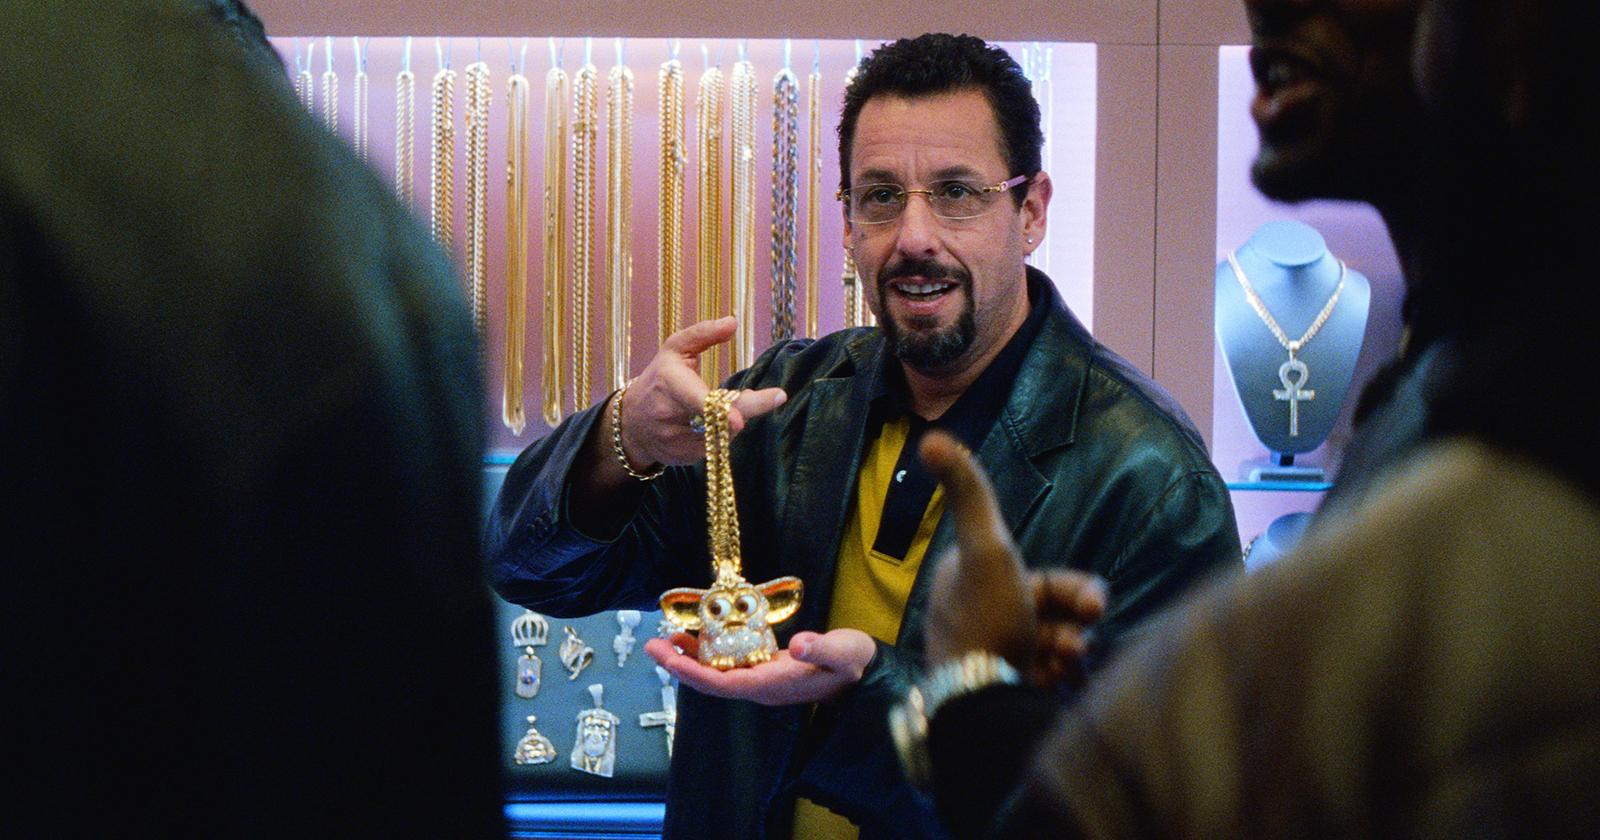 Howard muestra un furby de oro a clientes que visitan su tienda en Diamantes en bruto